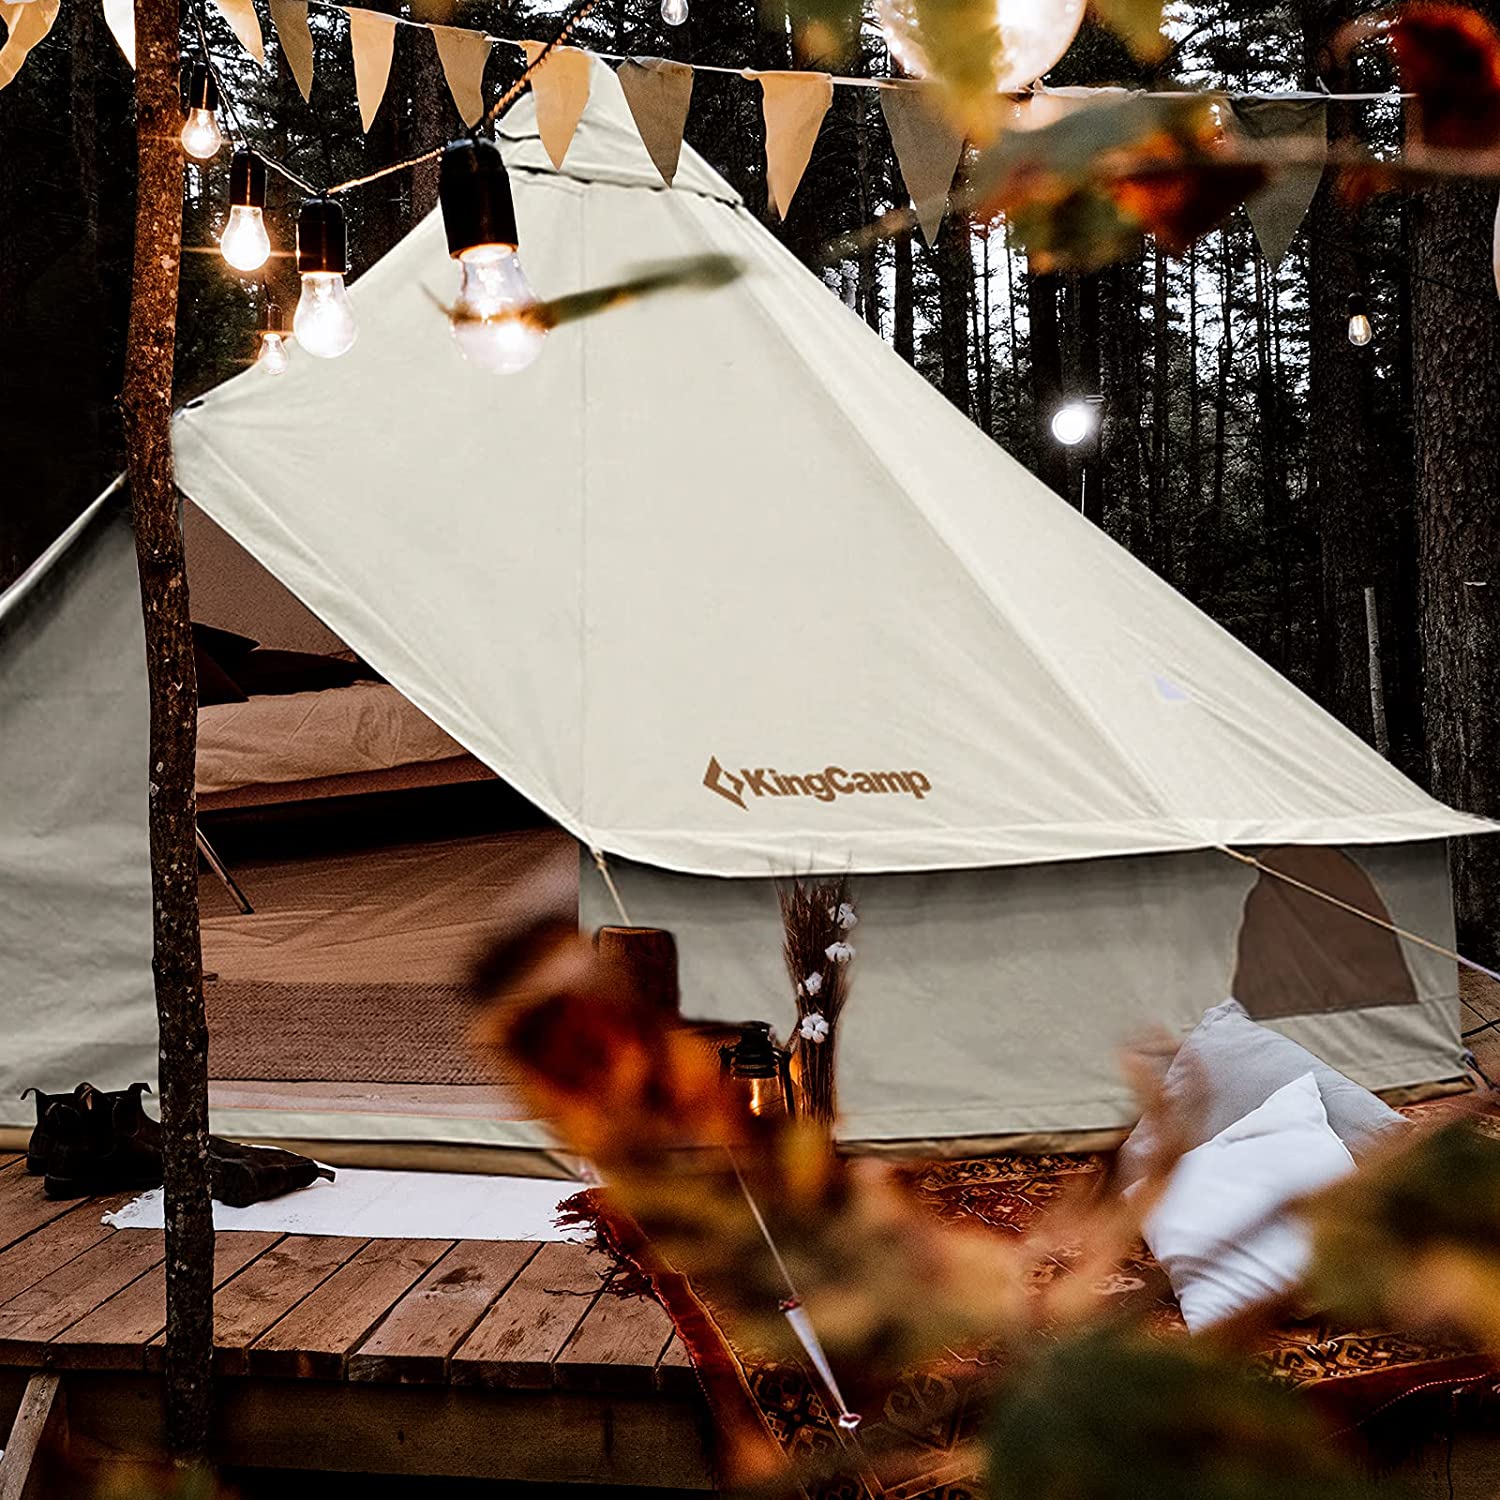 KingCamp 4-Season Khan Canvas Tent